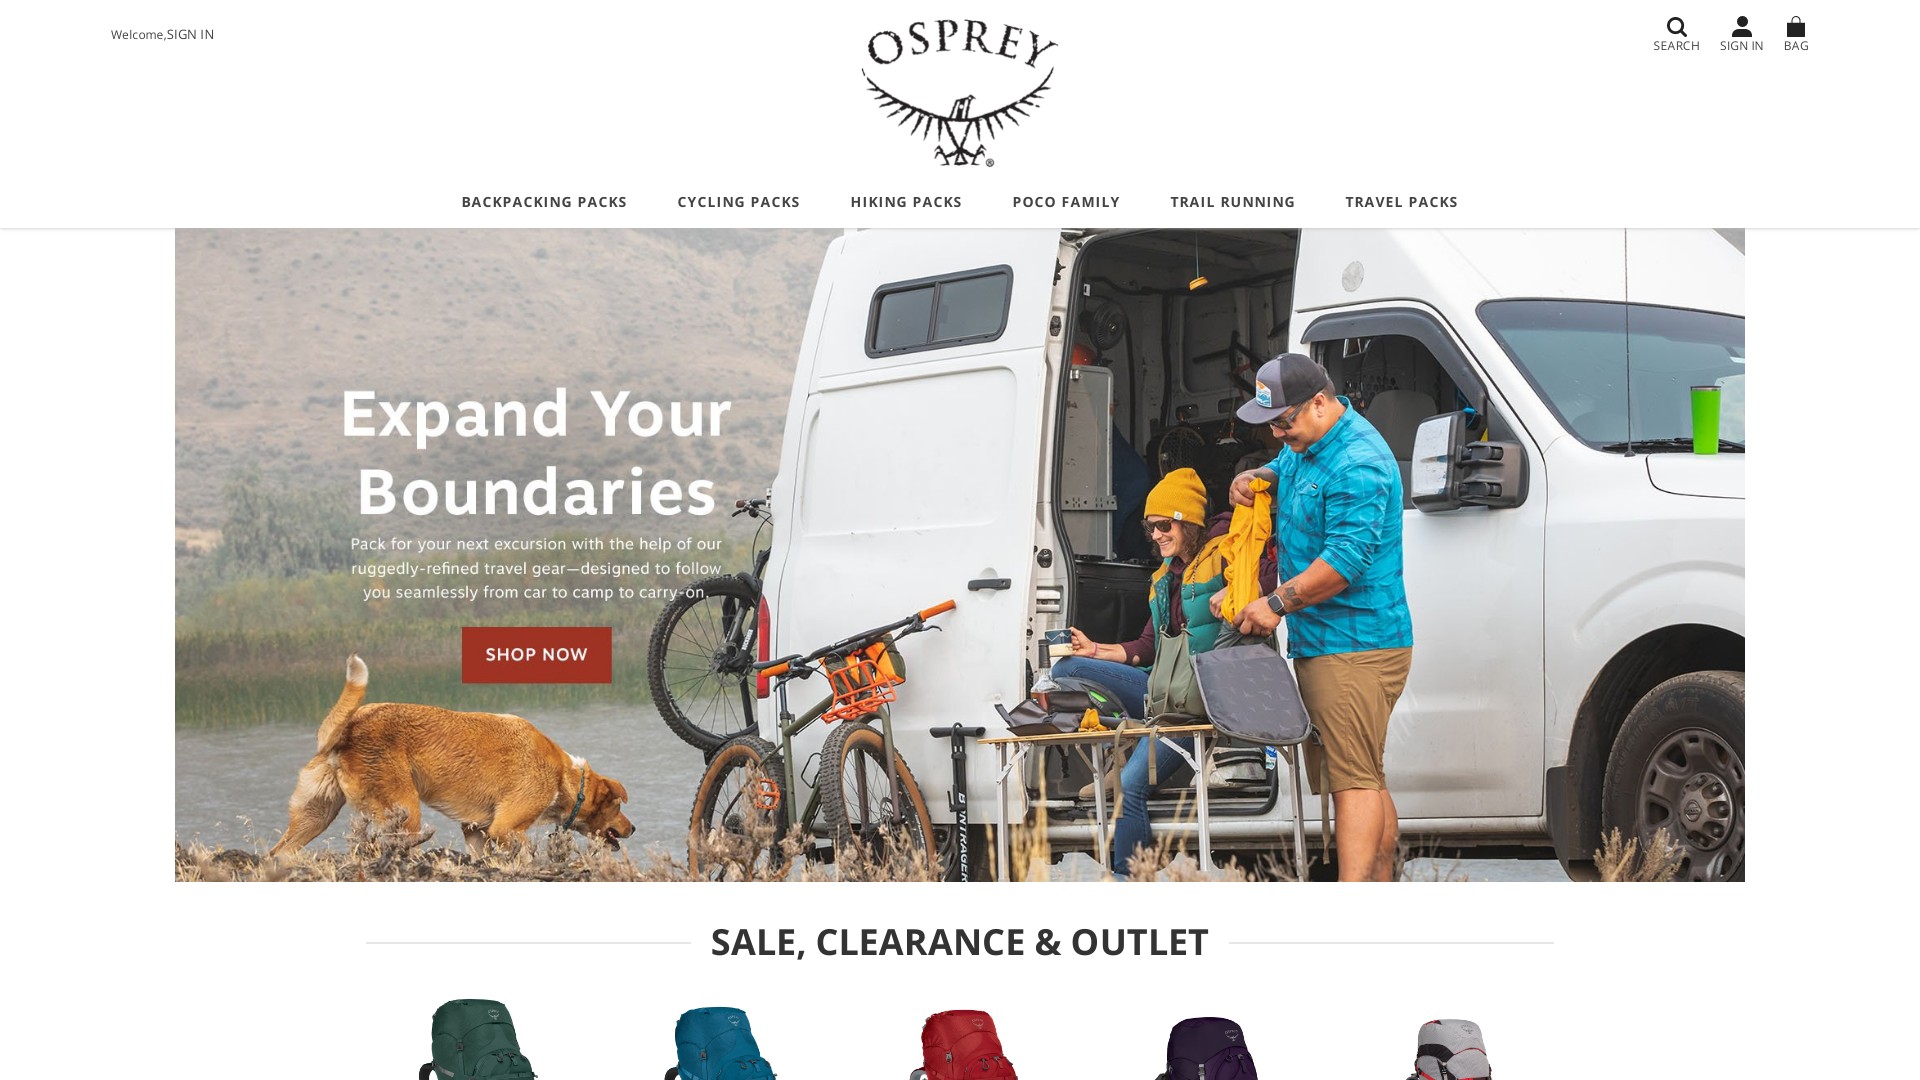 ospreysales.shop - Osprey Sales Shop Online Store